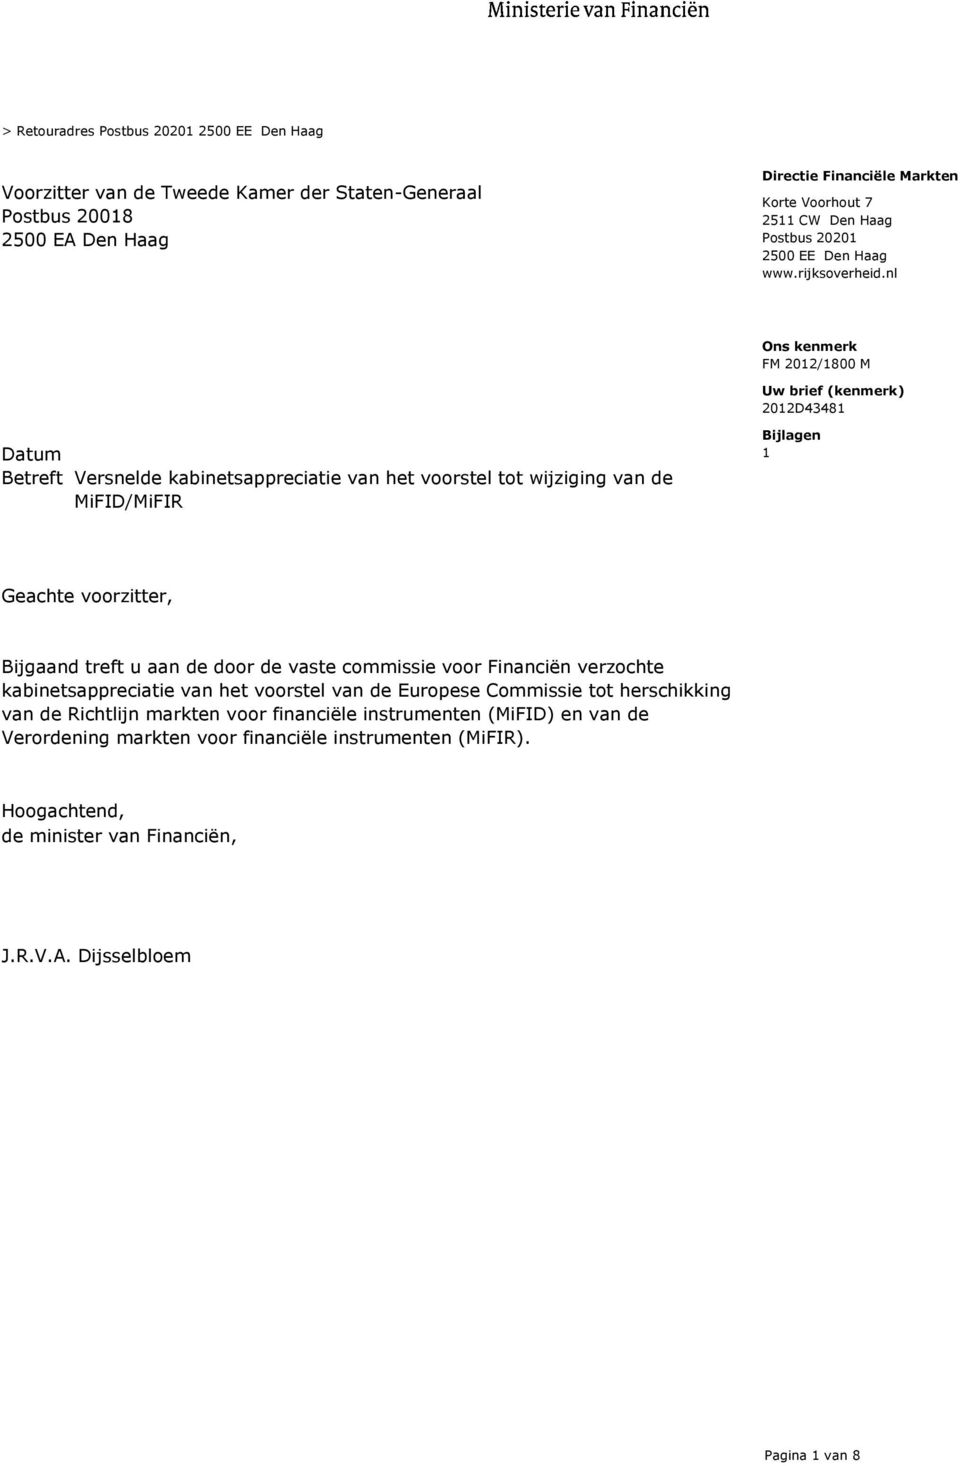 nl Uw brief (kenmerk) 2012D43481 Datum Betreft Versnelde kabinetsappreciatie van het voorstel tot wijziging van de MiFID/MiFIR Bijlagen 1 Geachte voorzitter, Bijgaand treft u aan de